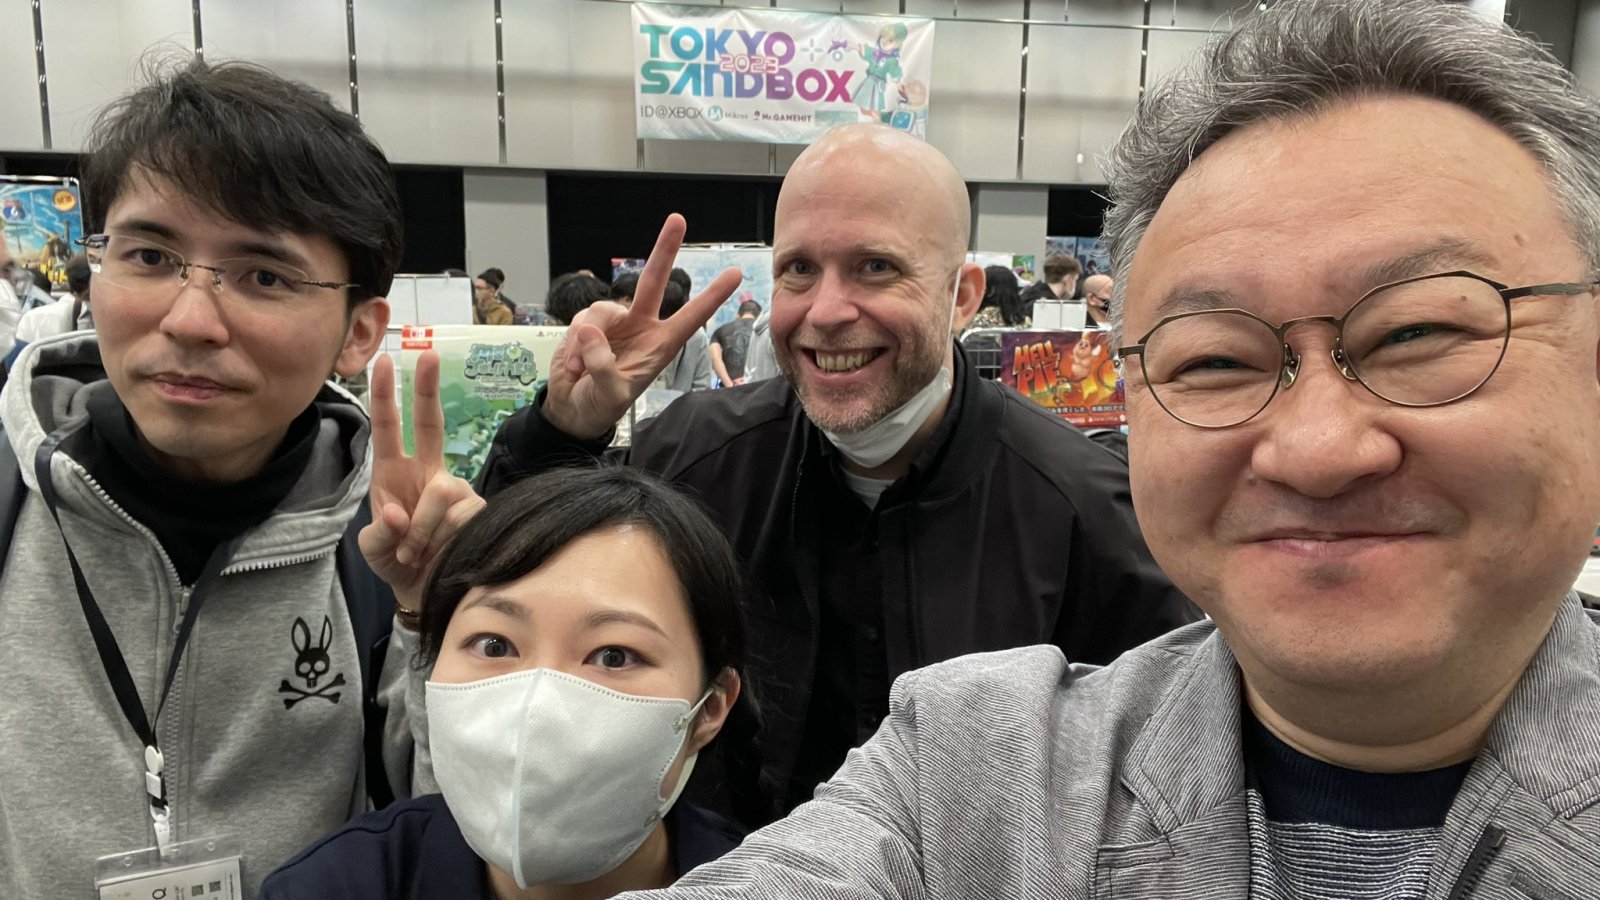 PS5: Shuhei Yoshida di Sony va al Tokyo Sand Box a caccia di giochi indipendenti